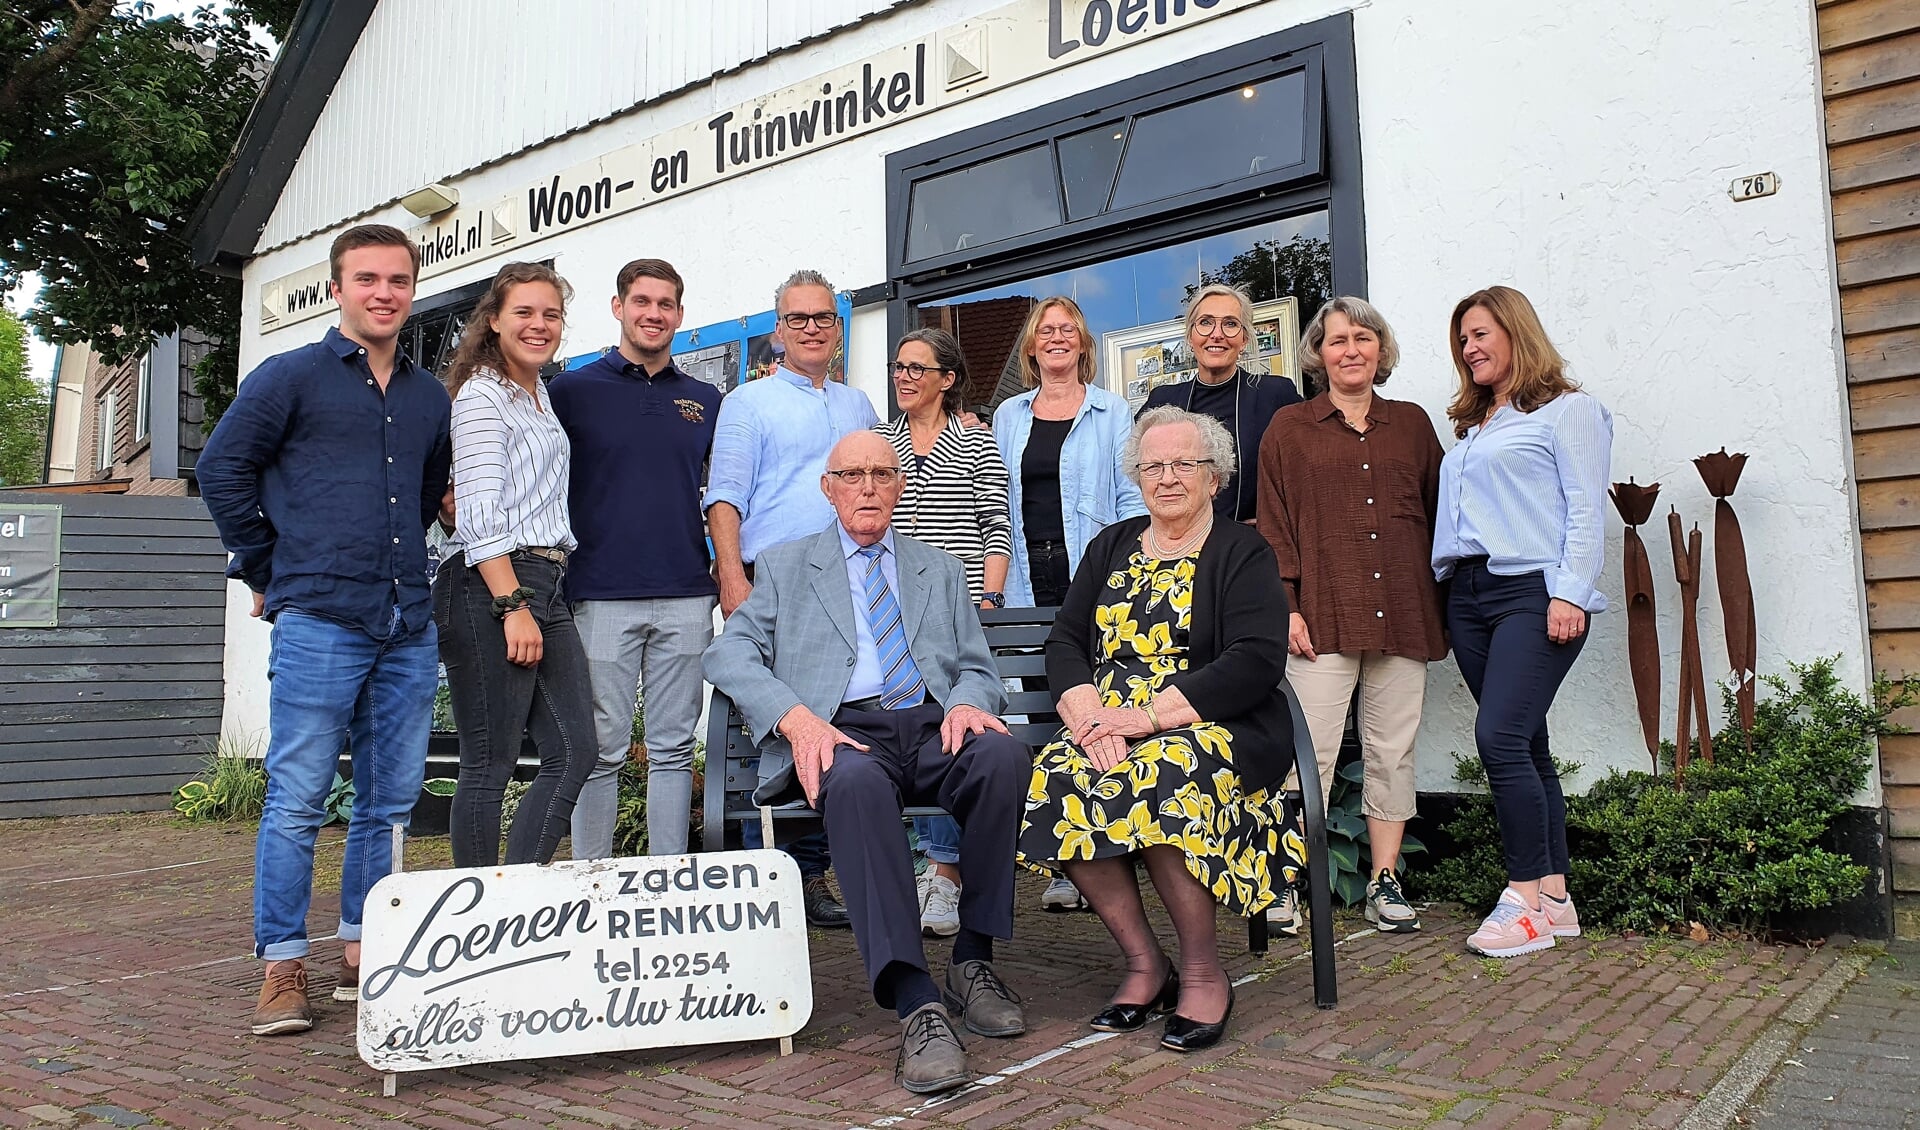 'Team Loenen' is trots op 'hun' winkel. Midden, achter vader Jan, Ina Bakker-Loenen, de drijvende kracht en inspirator van de woon- en tuinwinkel.